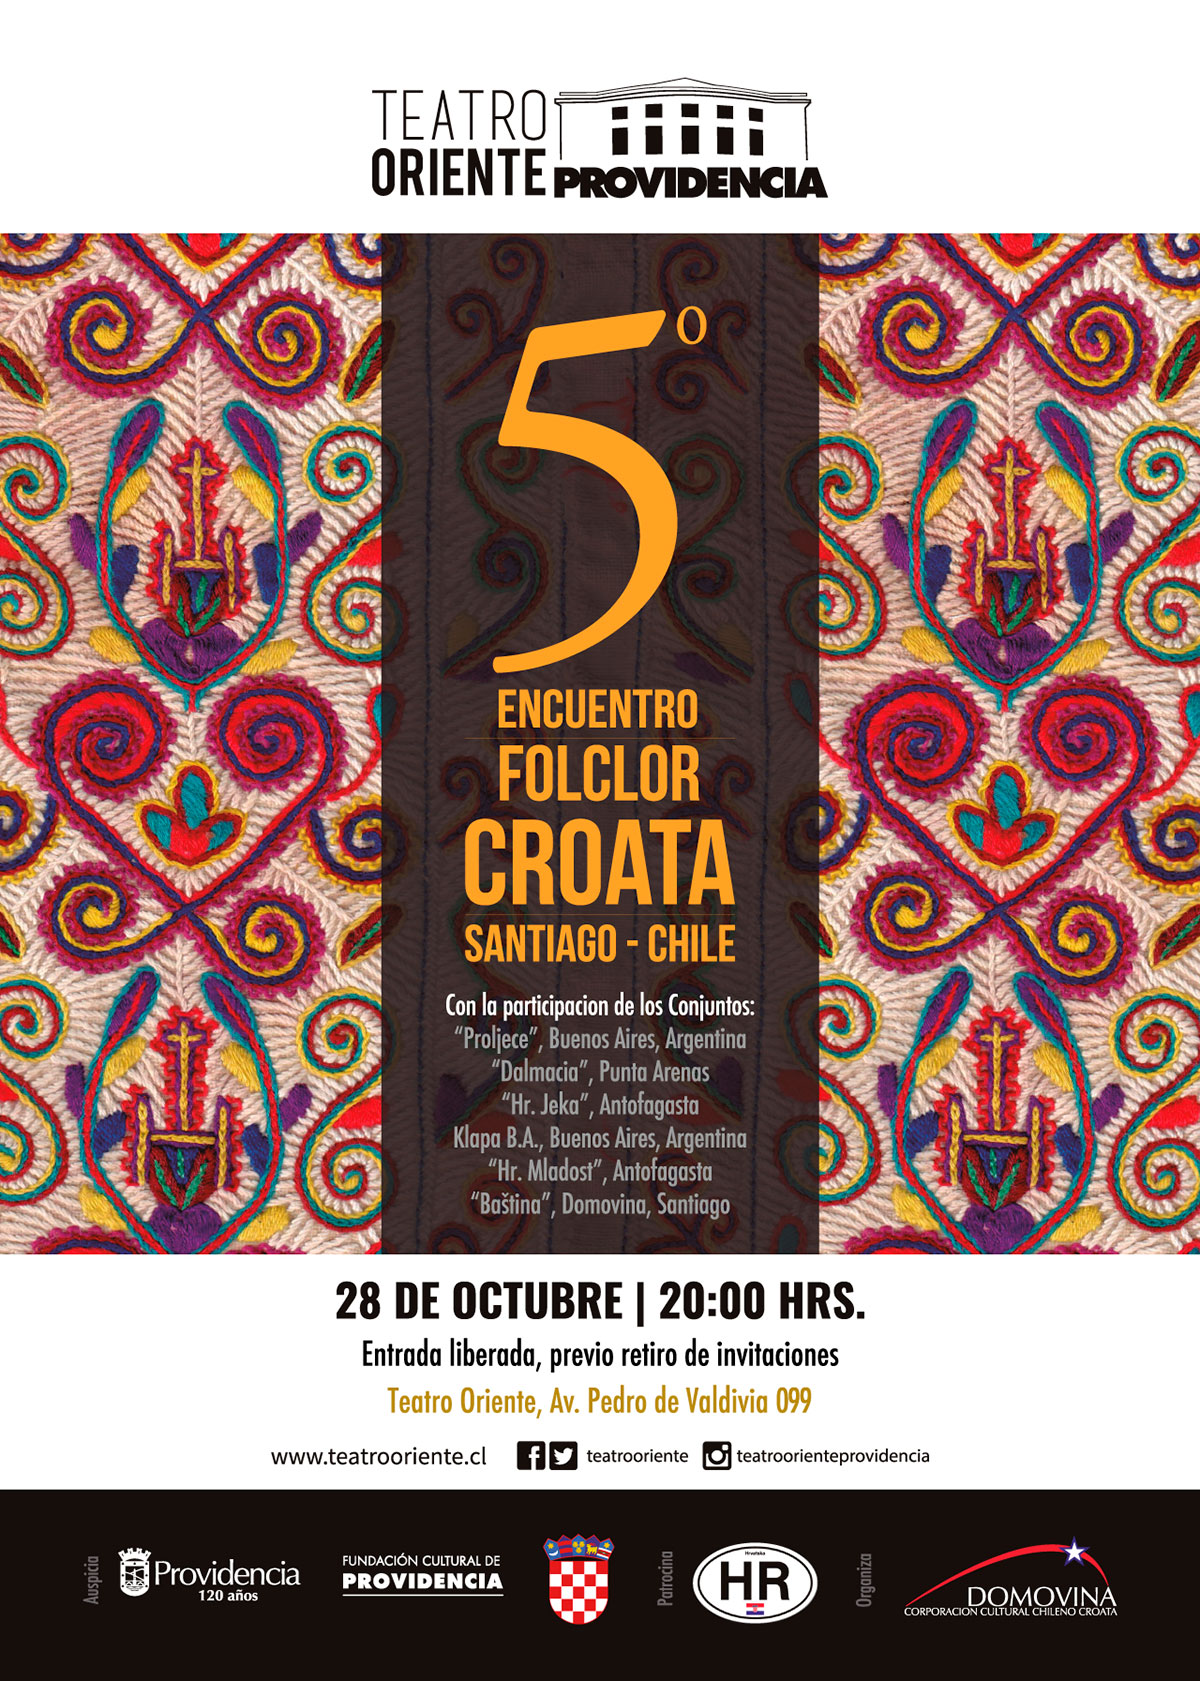 5 encuentro de Folclor Croata 28 de Octubre 2017, Teatro Oriente Providencia